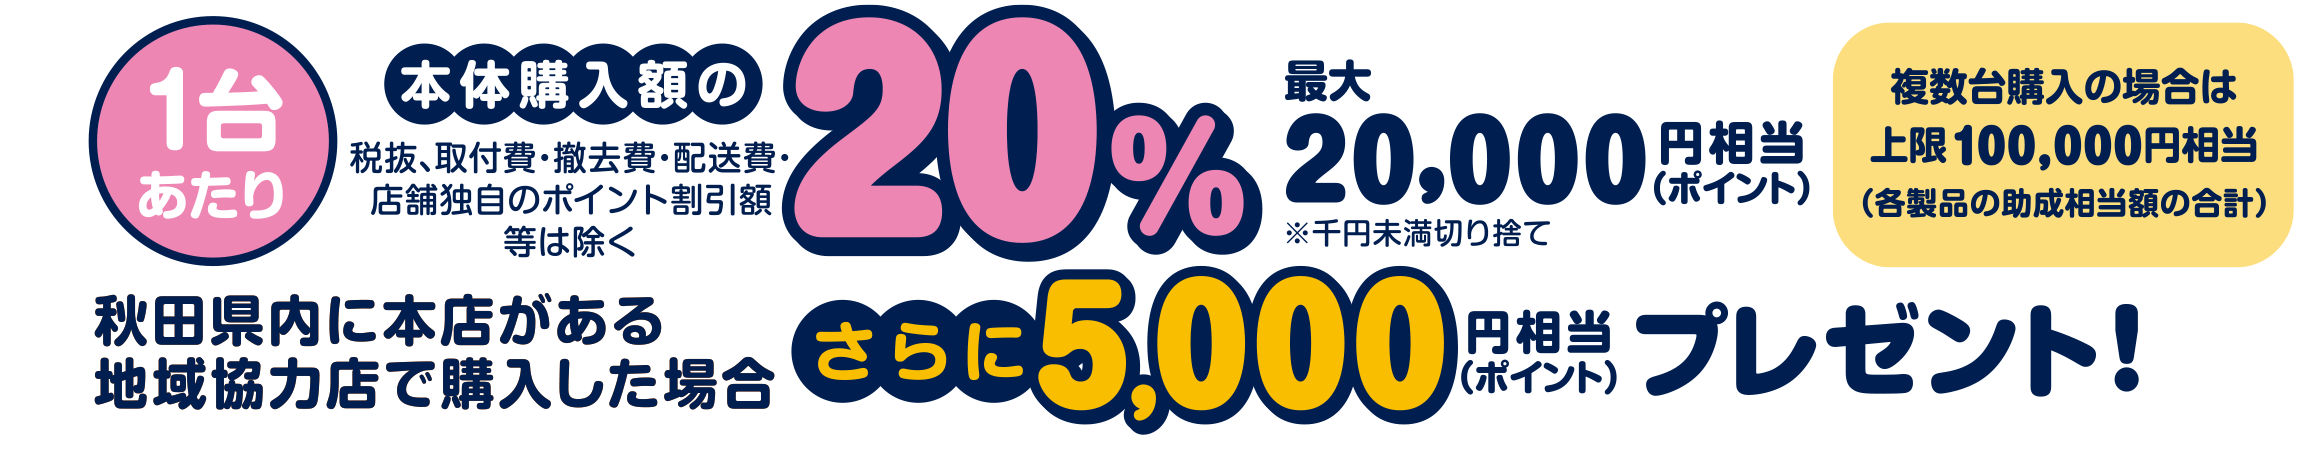 1台あたり本体購入額の20%（最大20,000円）相当のポイントをプレゼント。秋田県内に本店がある地域協力店で購入した場合、さらに5,000円相当のポイントをプレゼント。